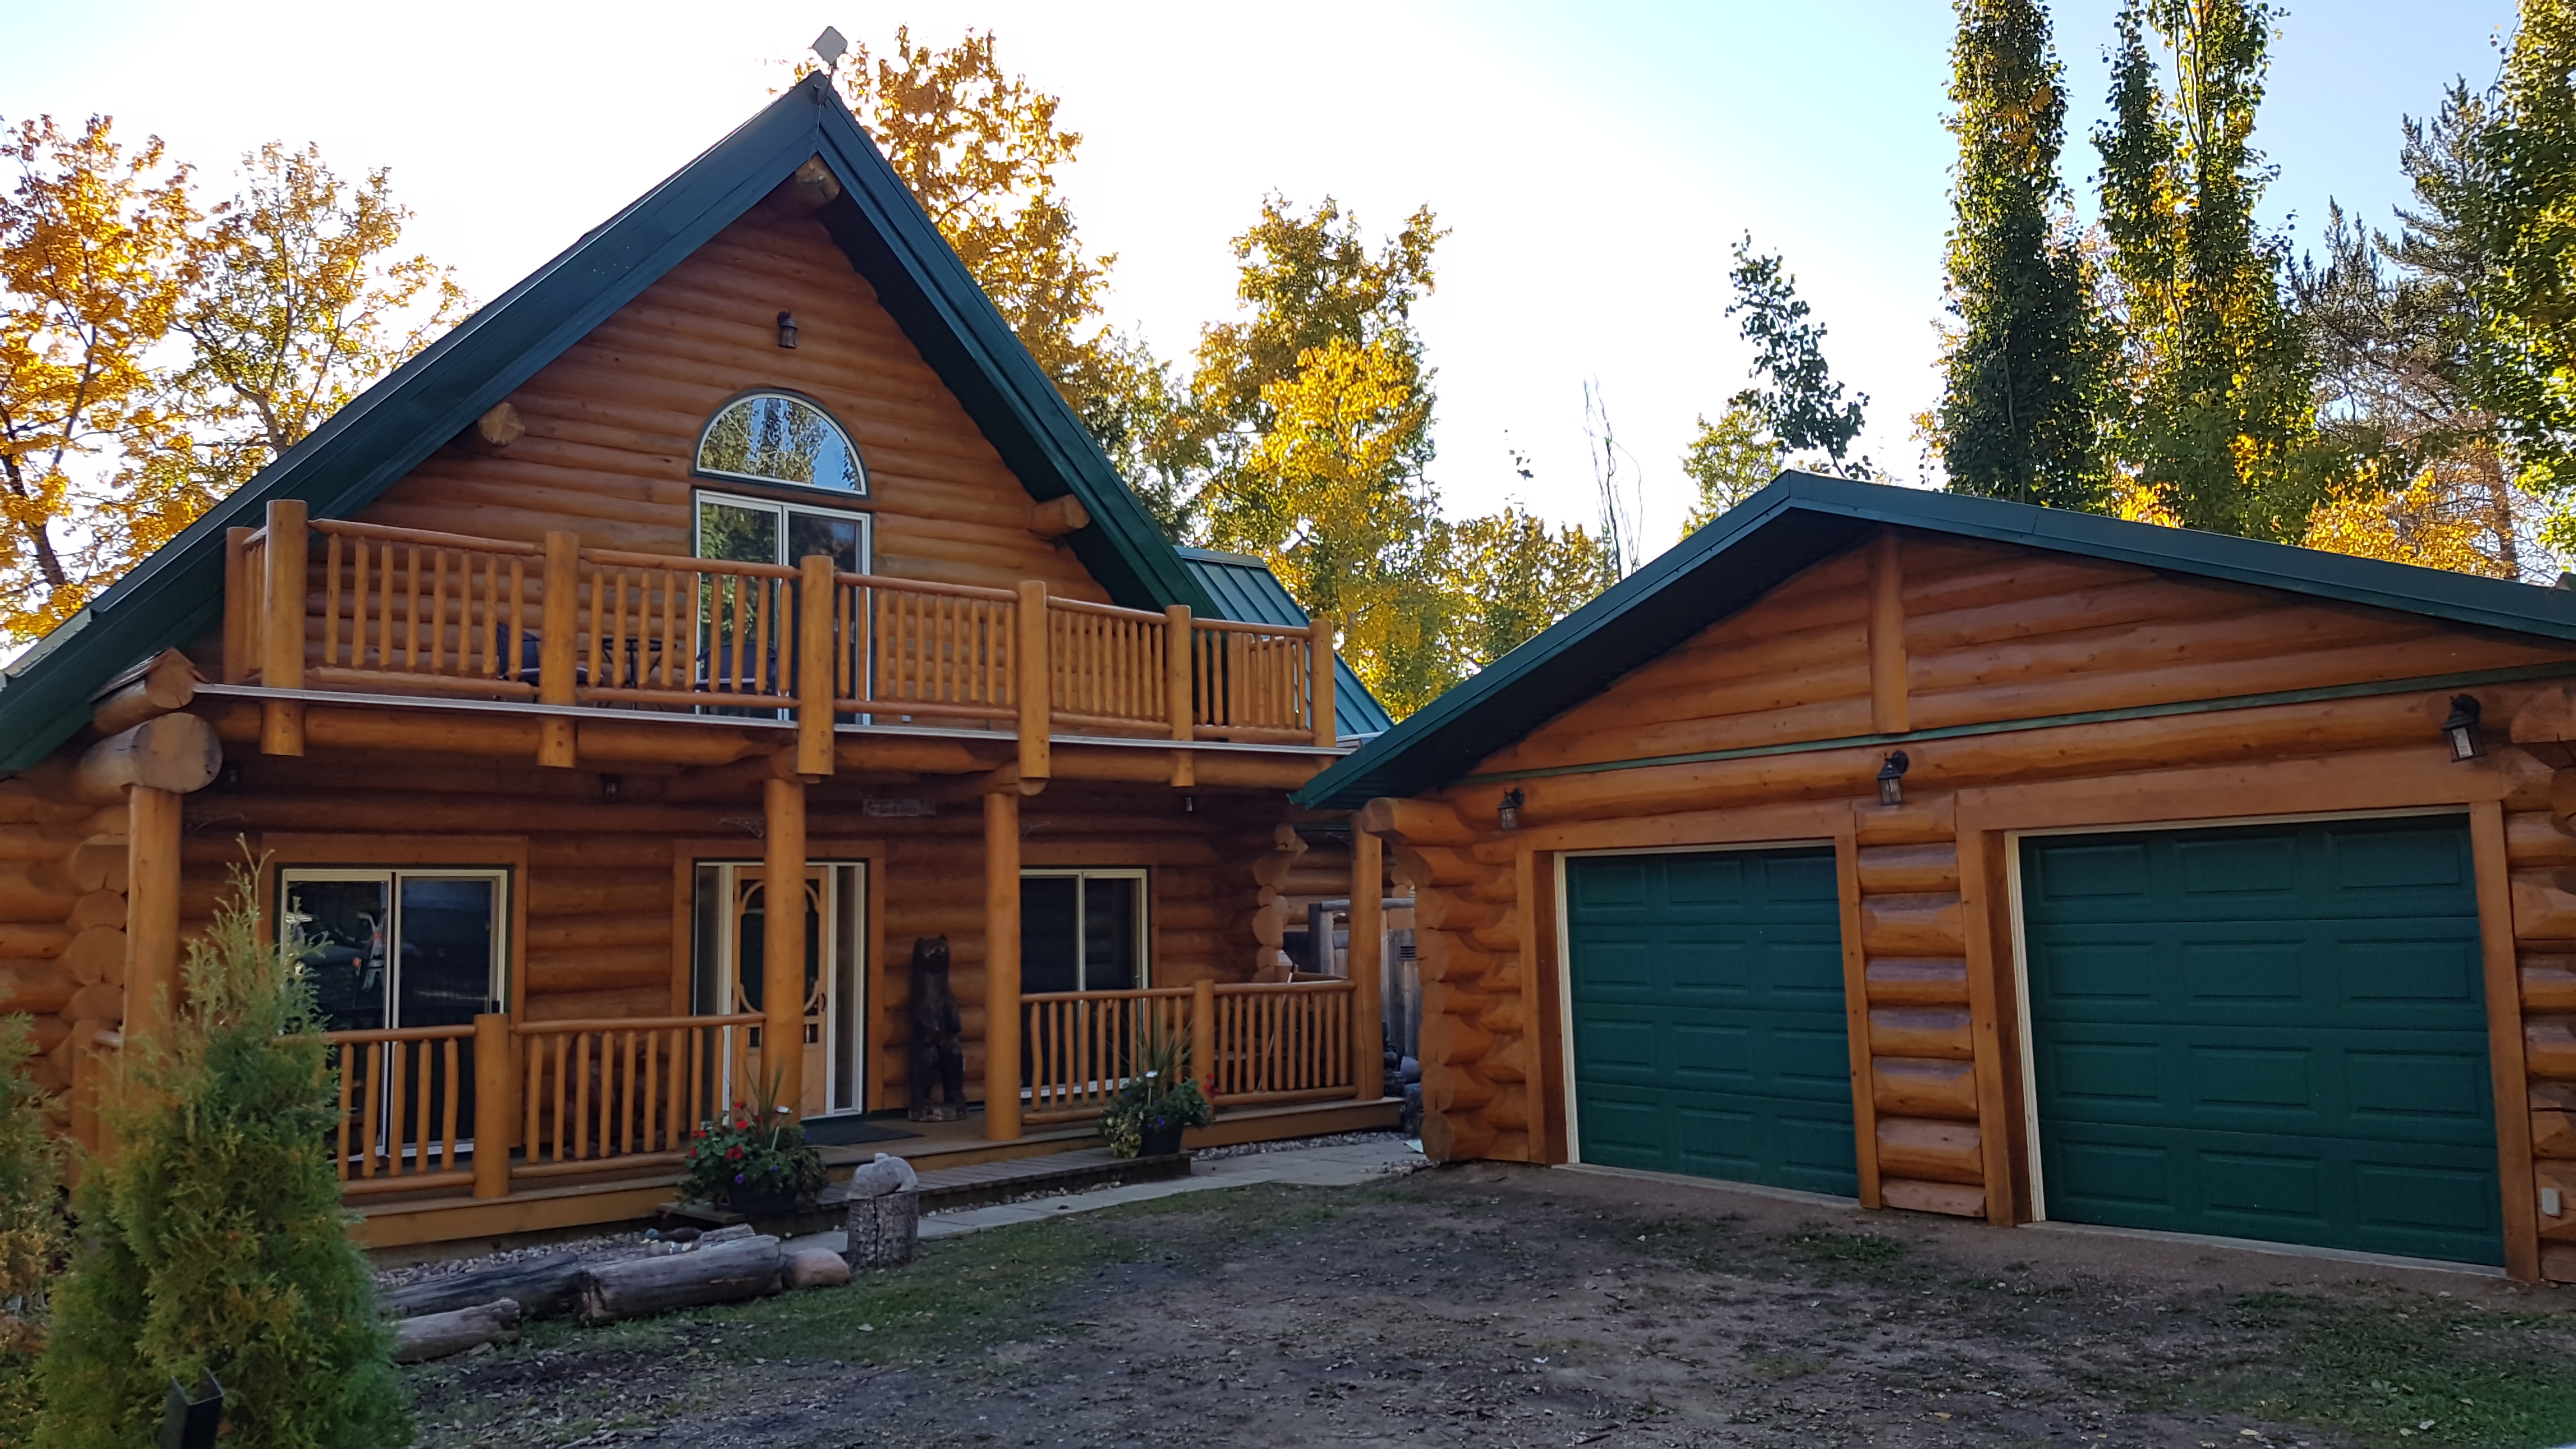 A log home exterior and garage